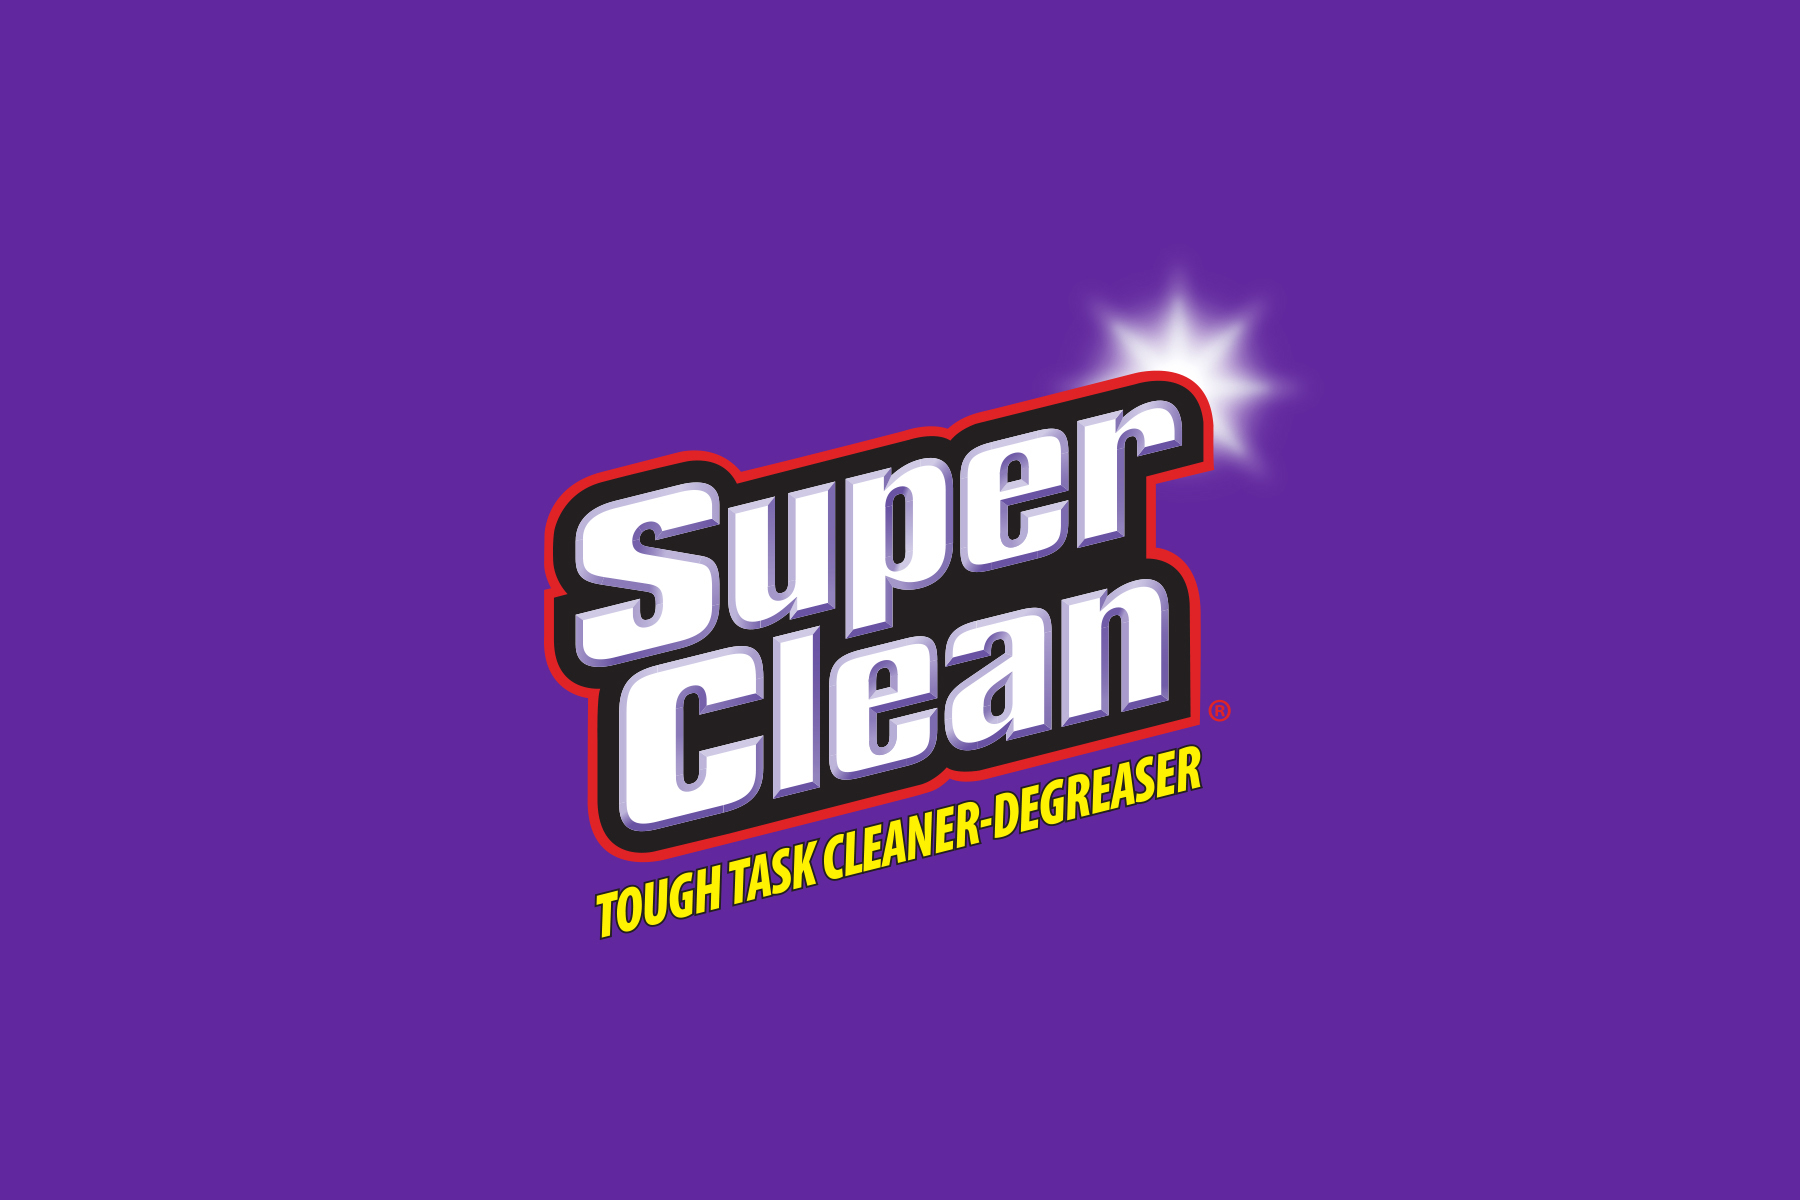 Home - Super Clean Car Wash